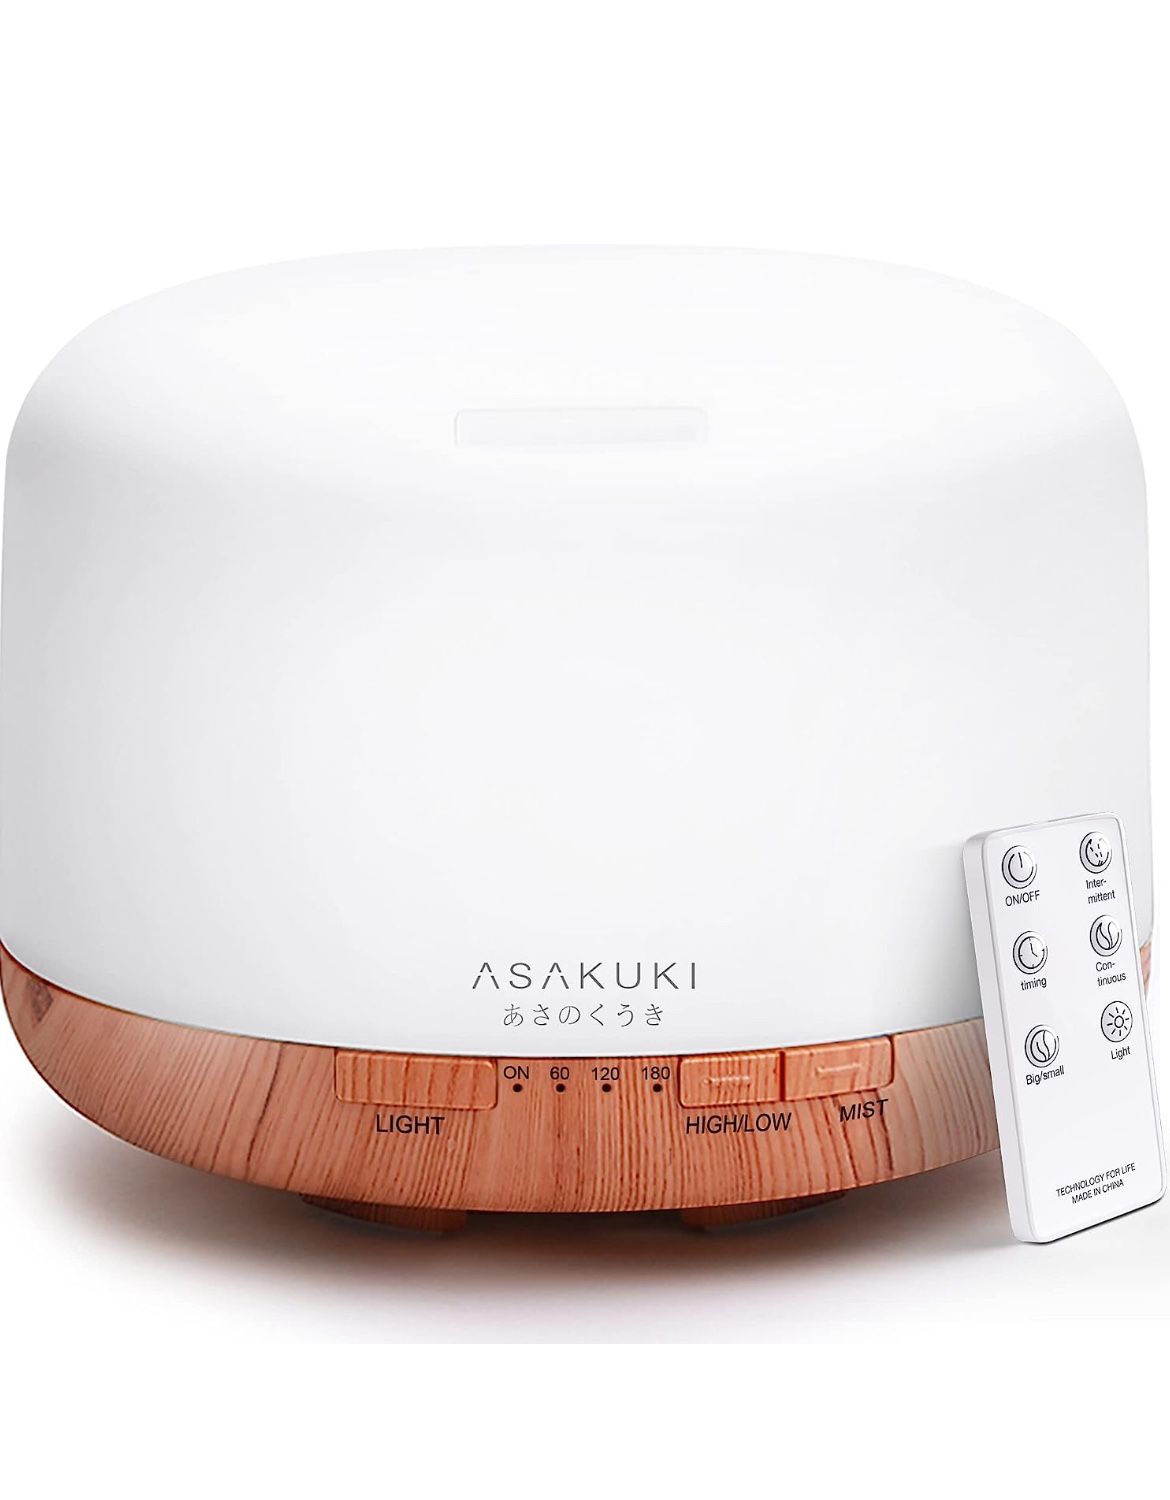 ASAKUKI 500ml Premium, Essential Oil Diffuser with Remote Control, 5 in 1 Ultrasonic Aromatherapy 